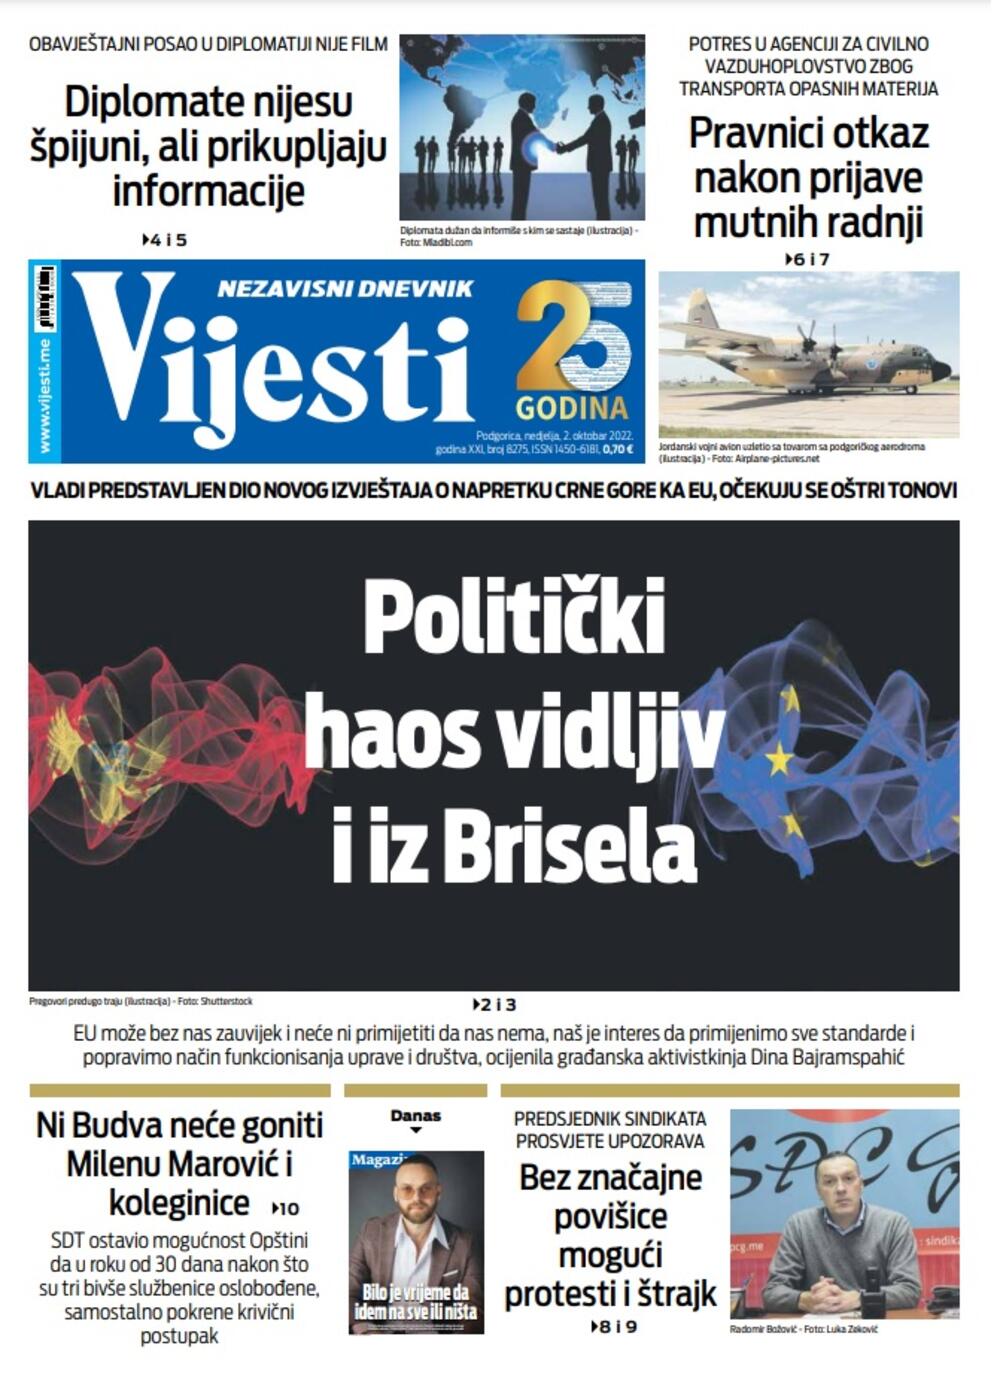 Naslovna strana "Vijesti" za 2. oktobar 2022.